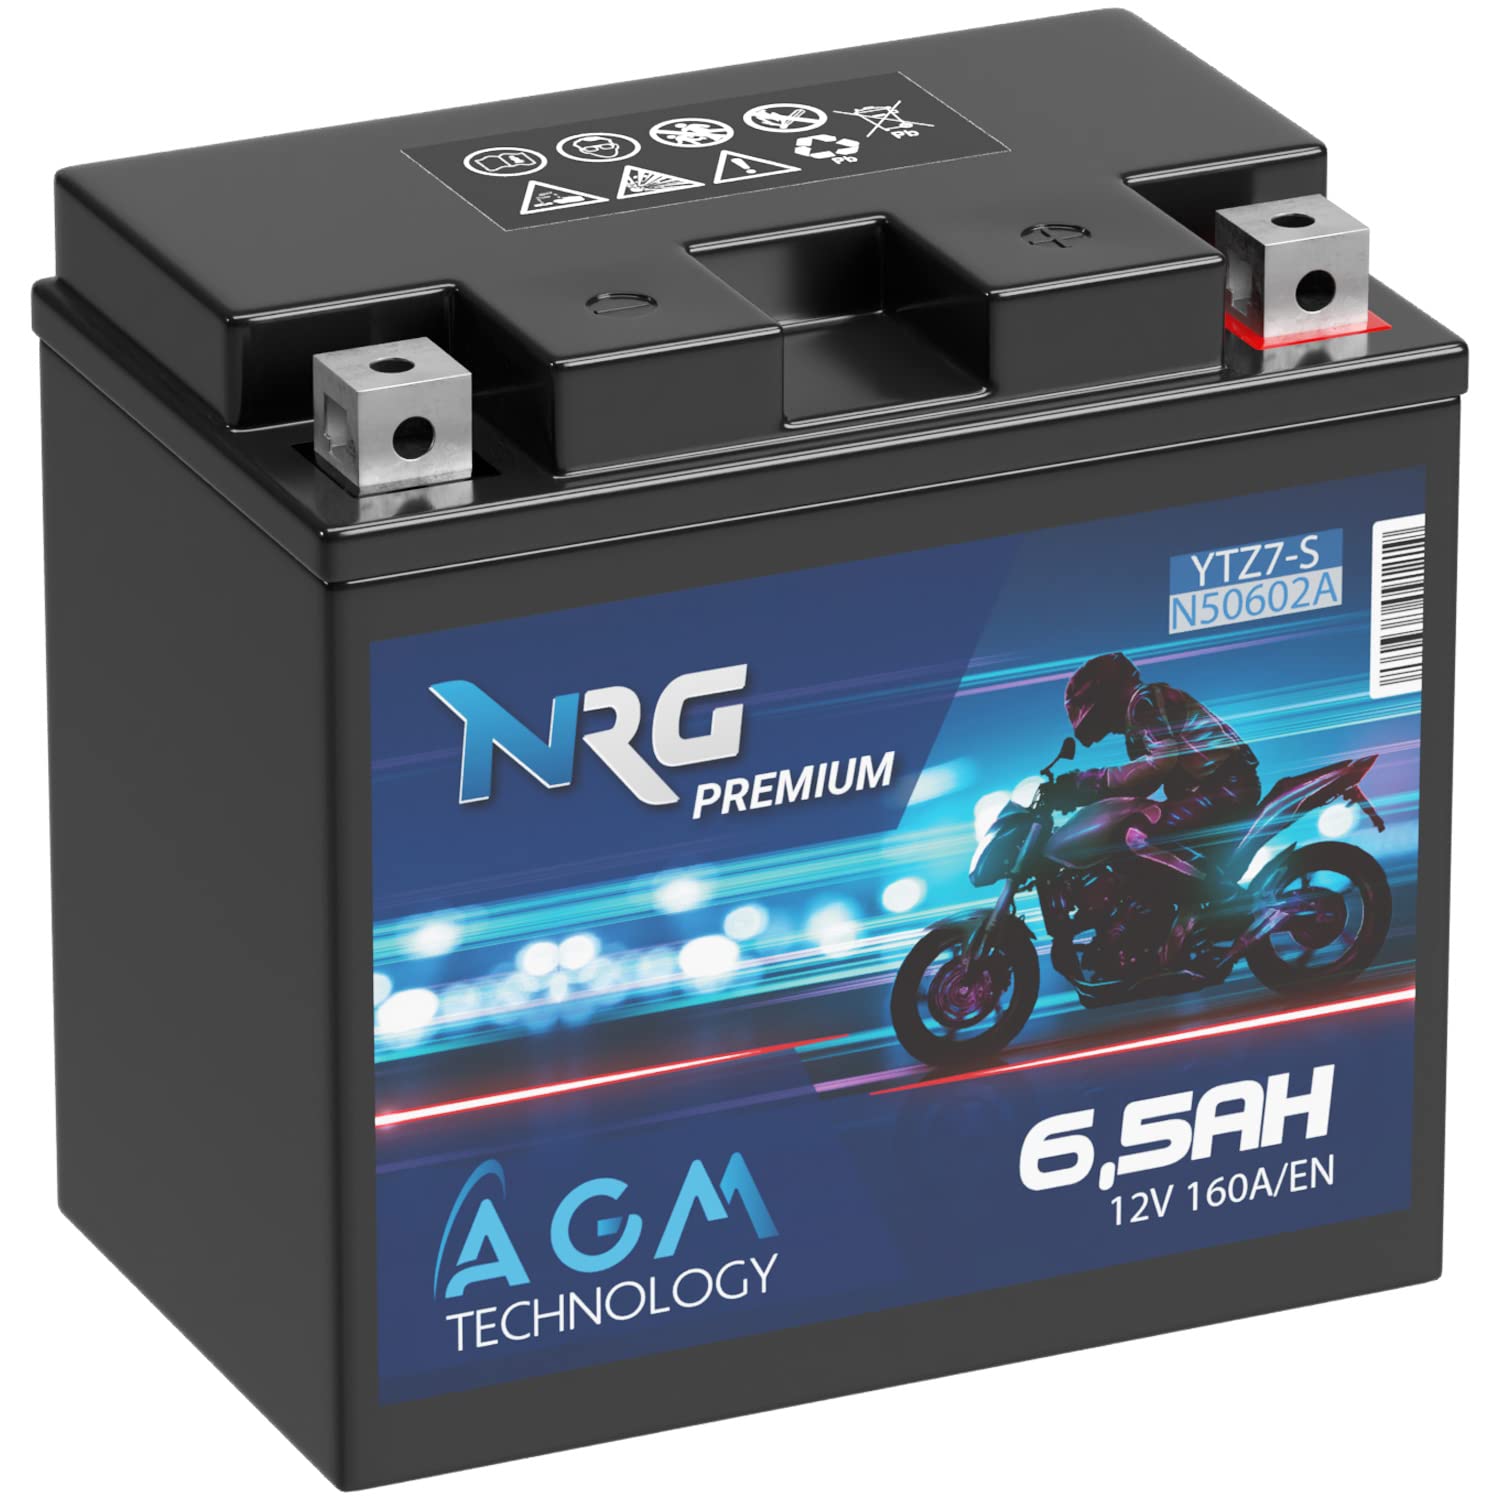 NRG Premium YTZ7S AGM Motorradbatterie 6,5Ah 12V 160A/EN Batterie 50602 TTZ7S-BS YTZ7-S GEL12-7Z-S auslaufsicher wartungsfrei ersetzt 6Ah von NRG PREMIUM